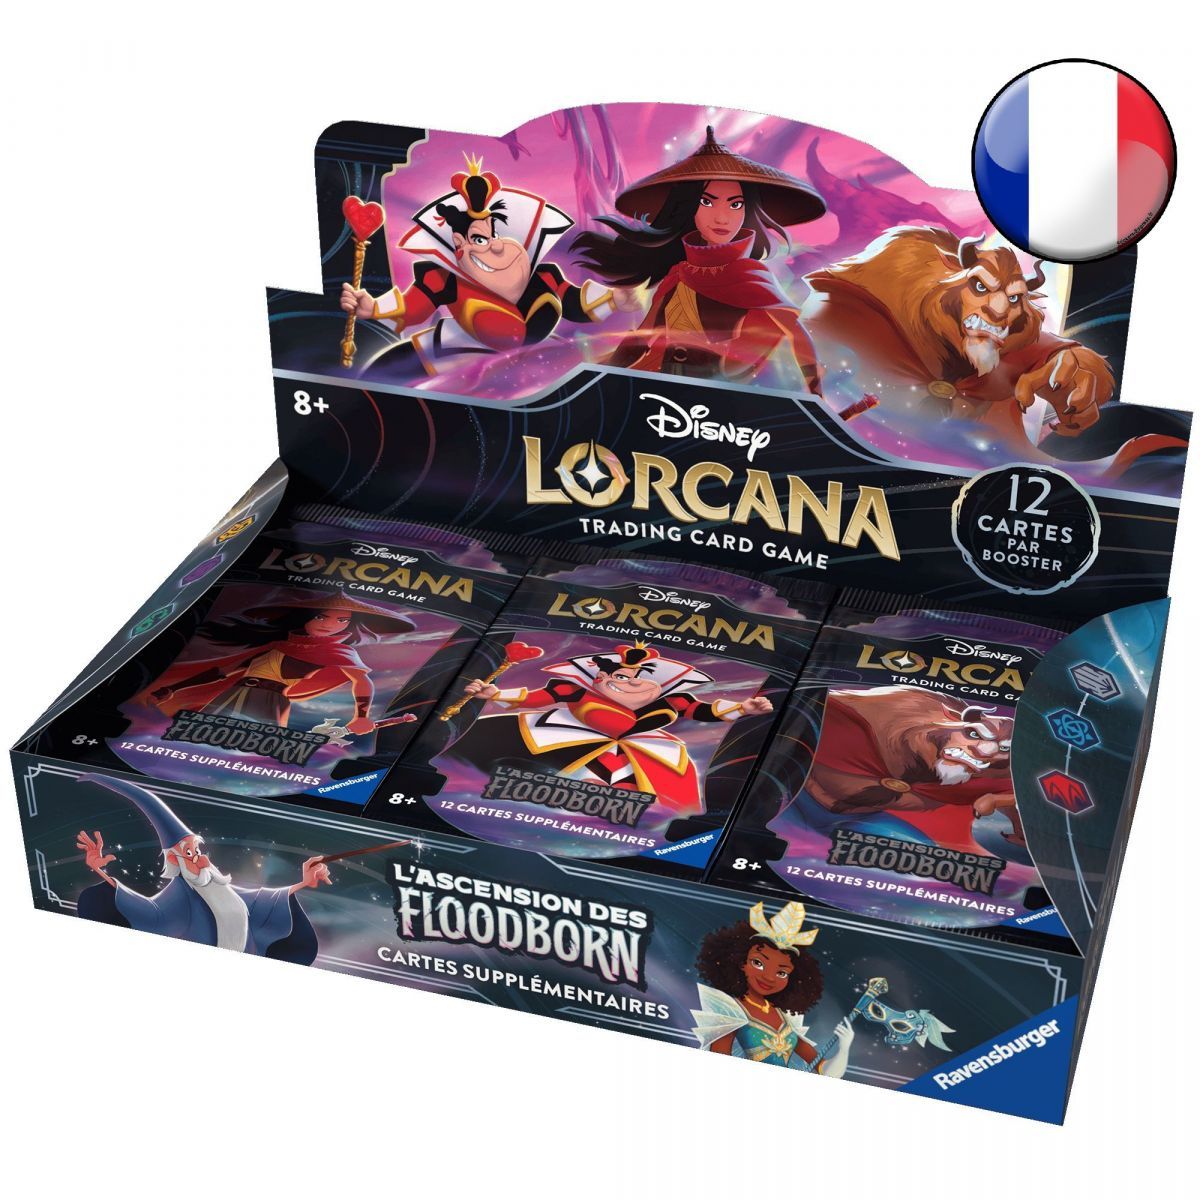 Disney Lorcana - Case Scellé de 4 Boites de Booster - Chapitre 2 - L'ascension des Floodborn - FR ( 2nd Print )